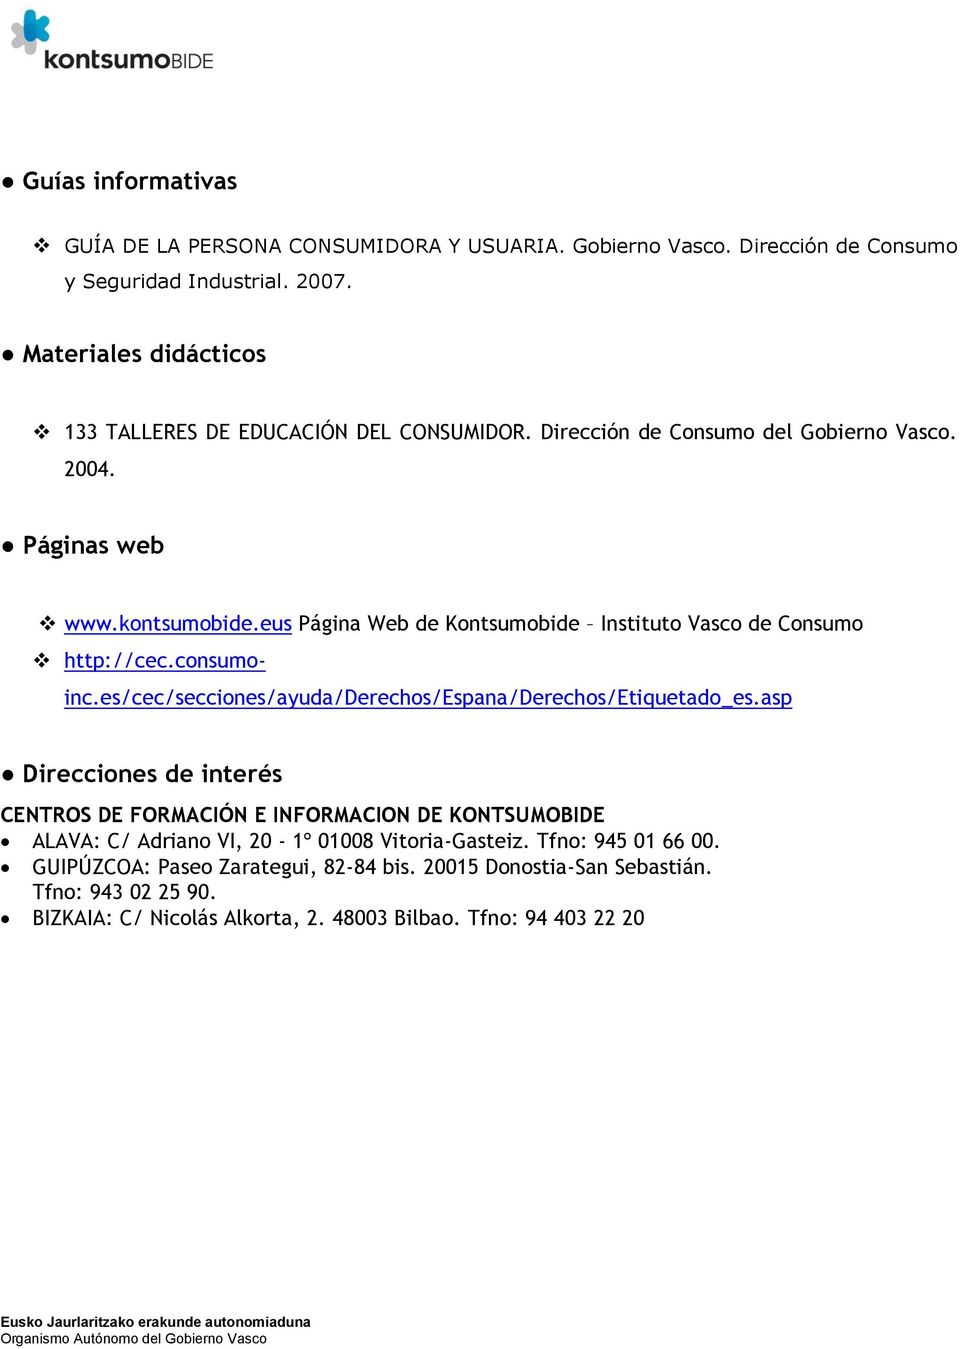 eus Página Web de Kontsumobide Instituto Vasco de Consumo http://cec.consumoinc.es/cec/secciones/ayuda/derechos/espana/derechos/etiquetado_es.